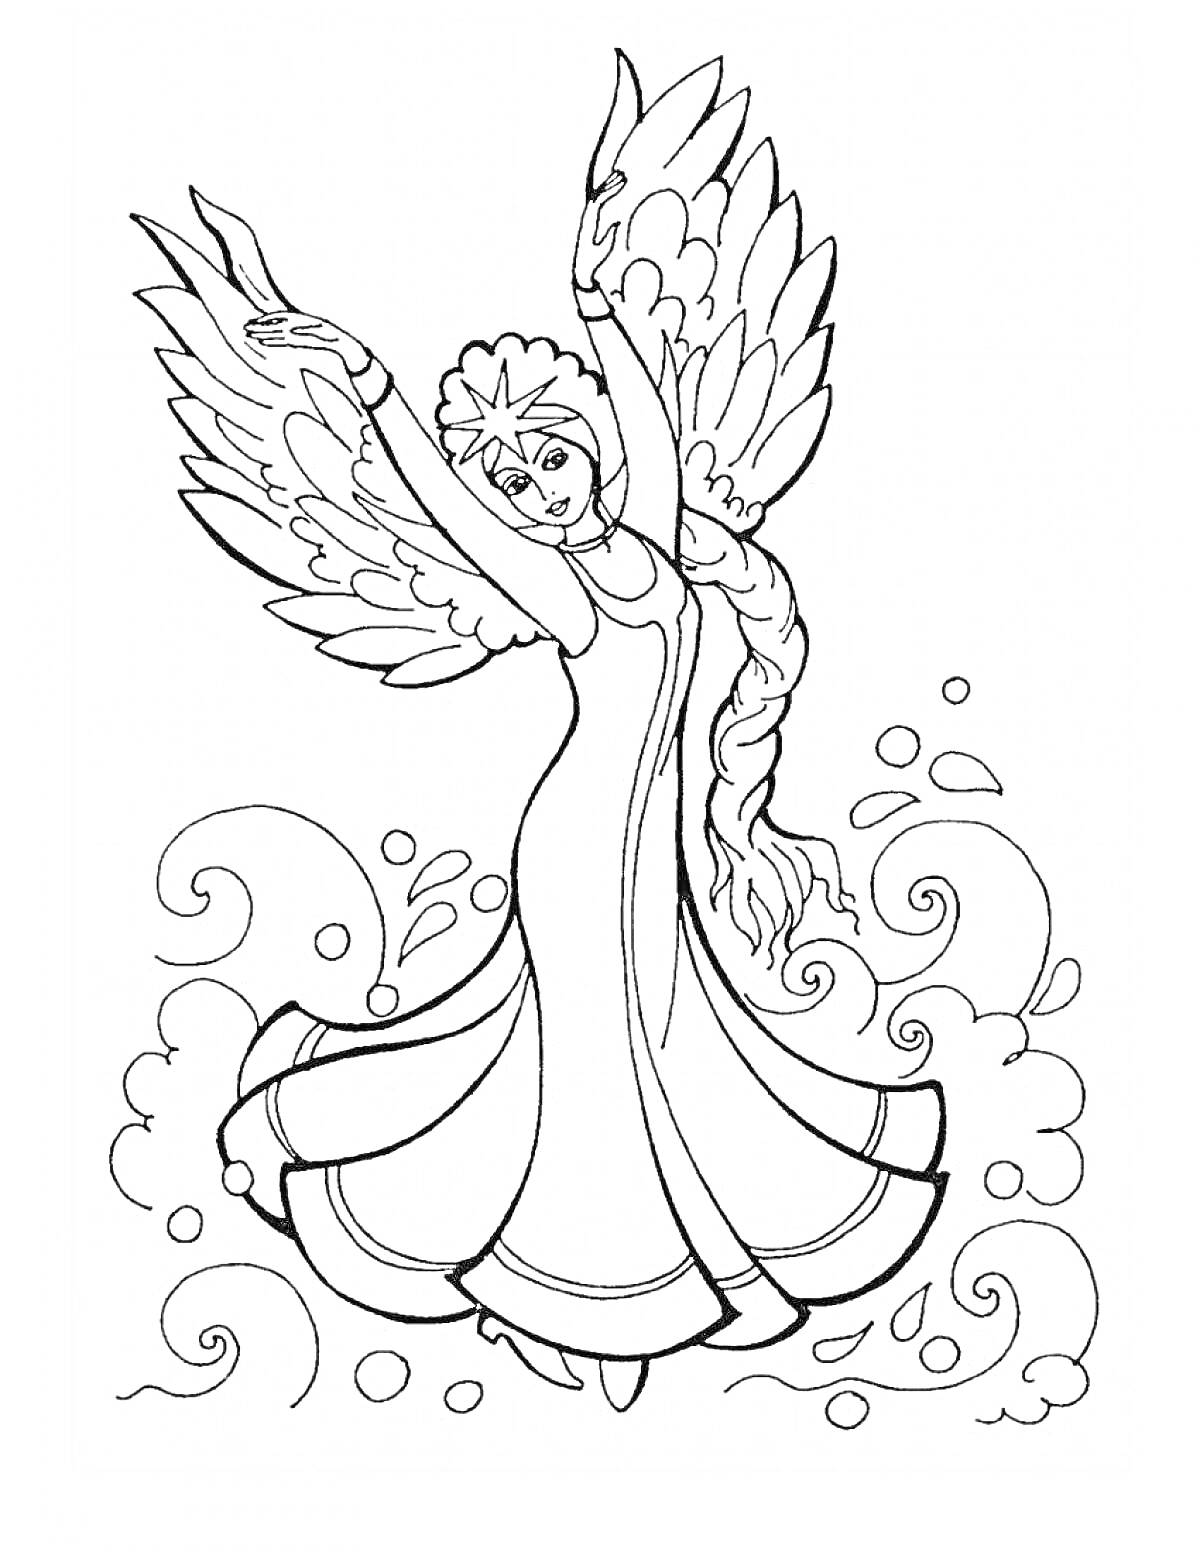 Раскраска Фея с крыльями и длинным платьем, танцующая на волнах